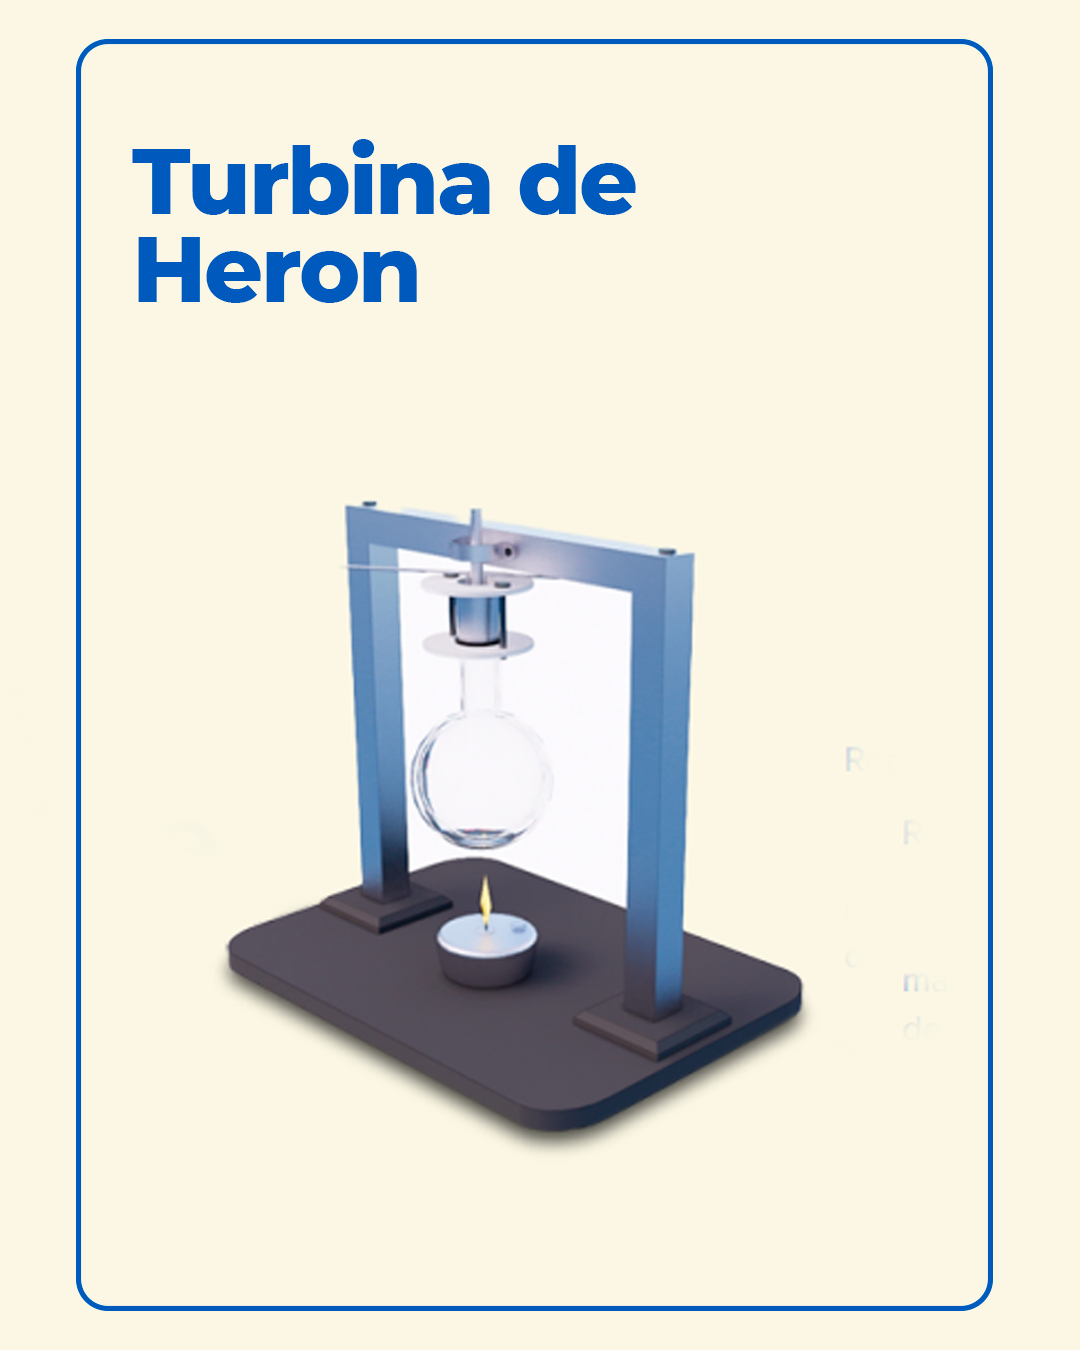 Turbina de Heron